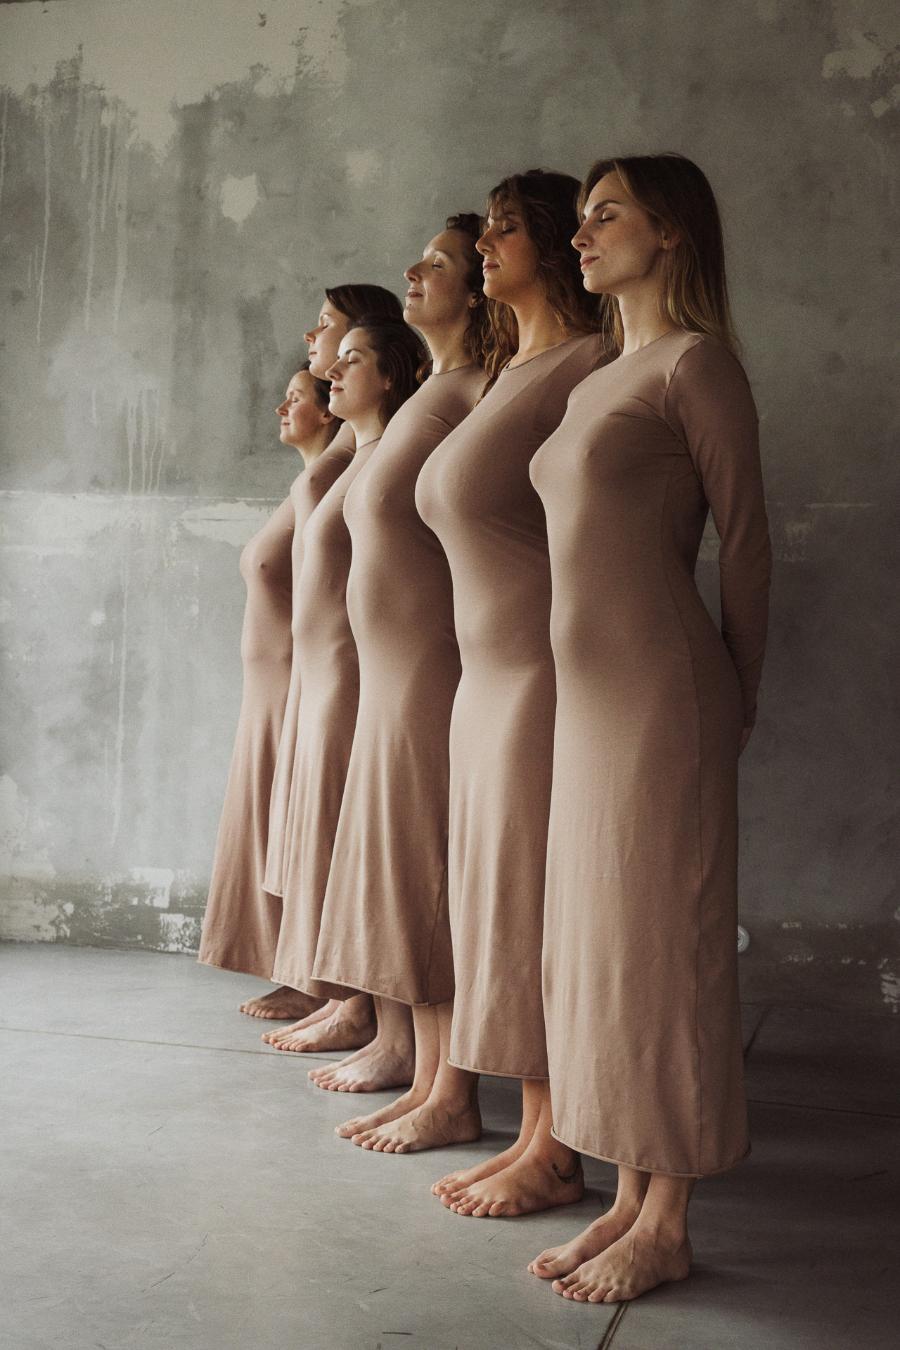 Sukienka Ciałolubna powstała z inspiracji zmieniającym się kobiecym ciałem, z potrzeby przyjęcia ciała takiego, jakim jest. (Fot. Natalia Miedziak-Skonieczna)